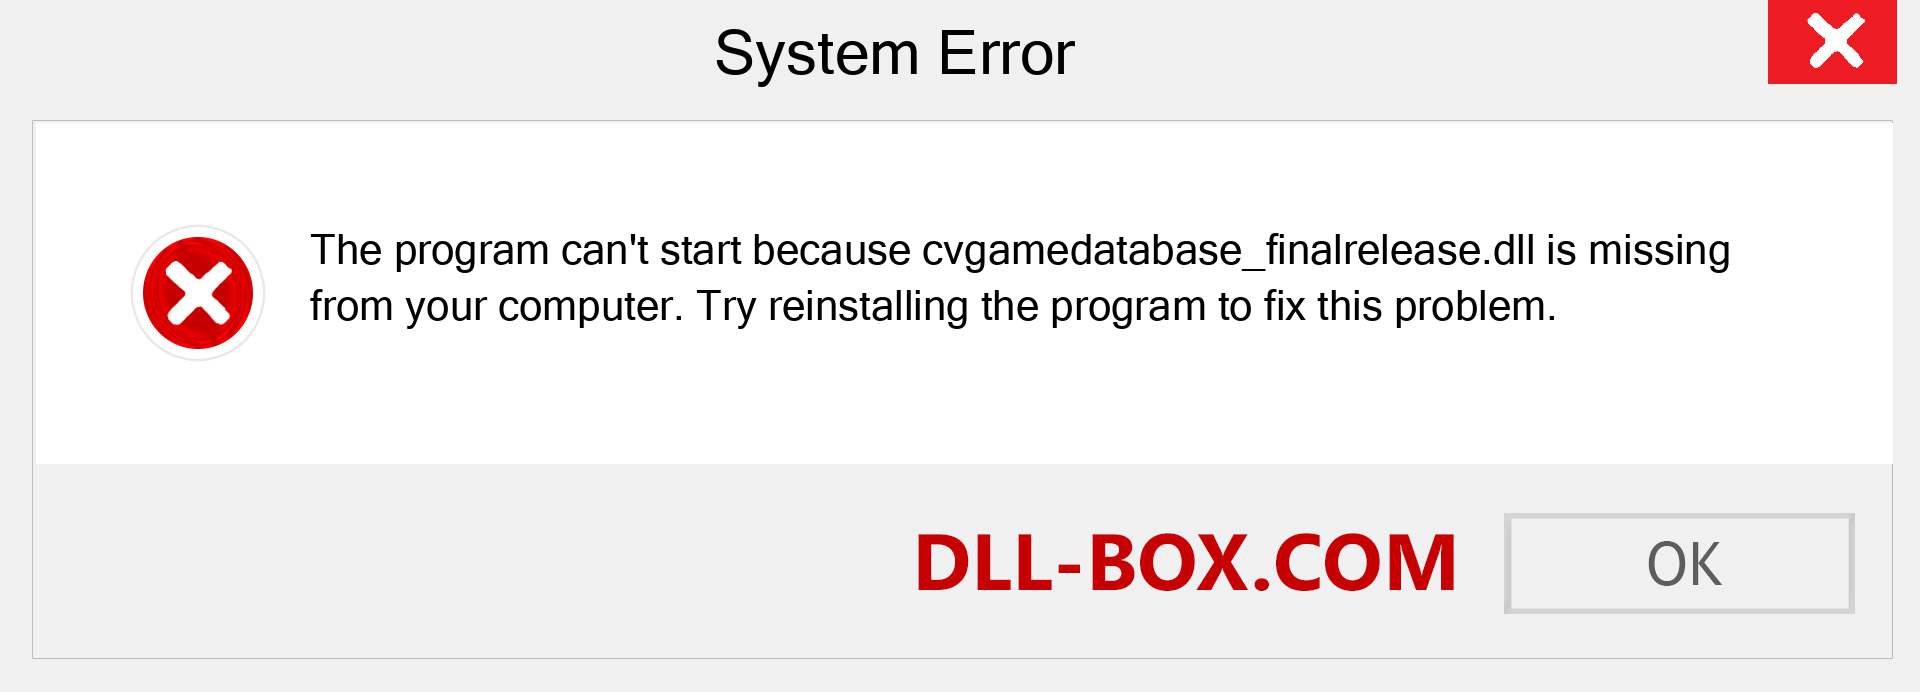  cvgamedatabase_finalrelease.dll file is missing?. Download for Windows 7, 8, 10 - Fix  cvgamedatabase_finalrelease dll Missing Error on Windows, photos, images